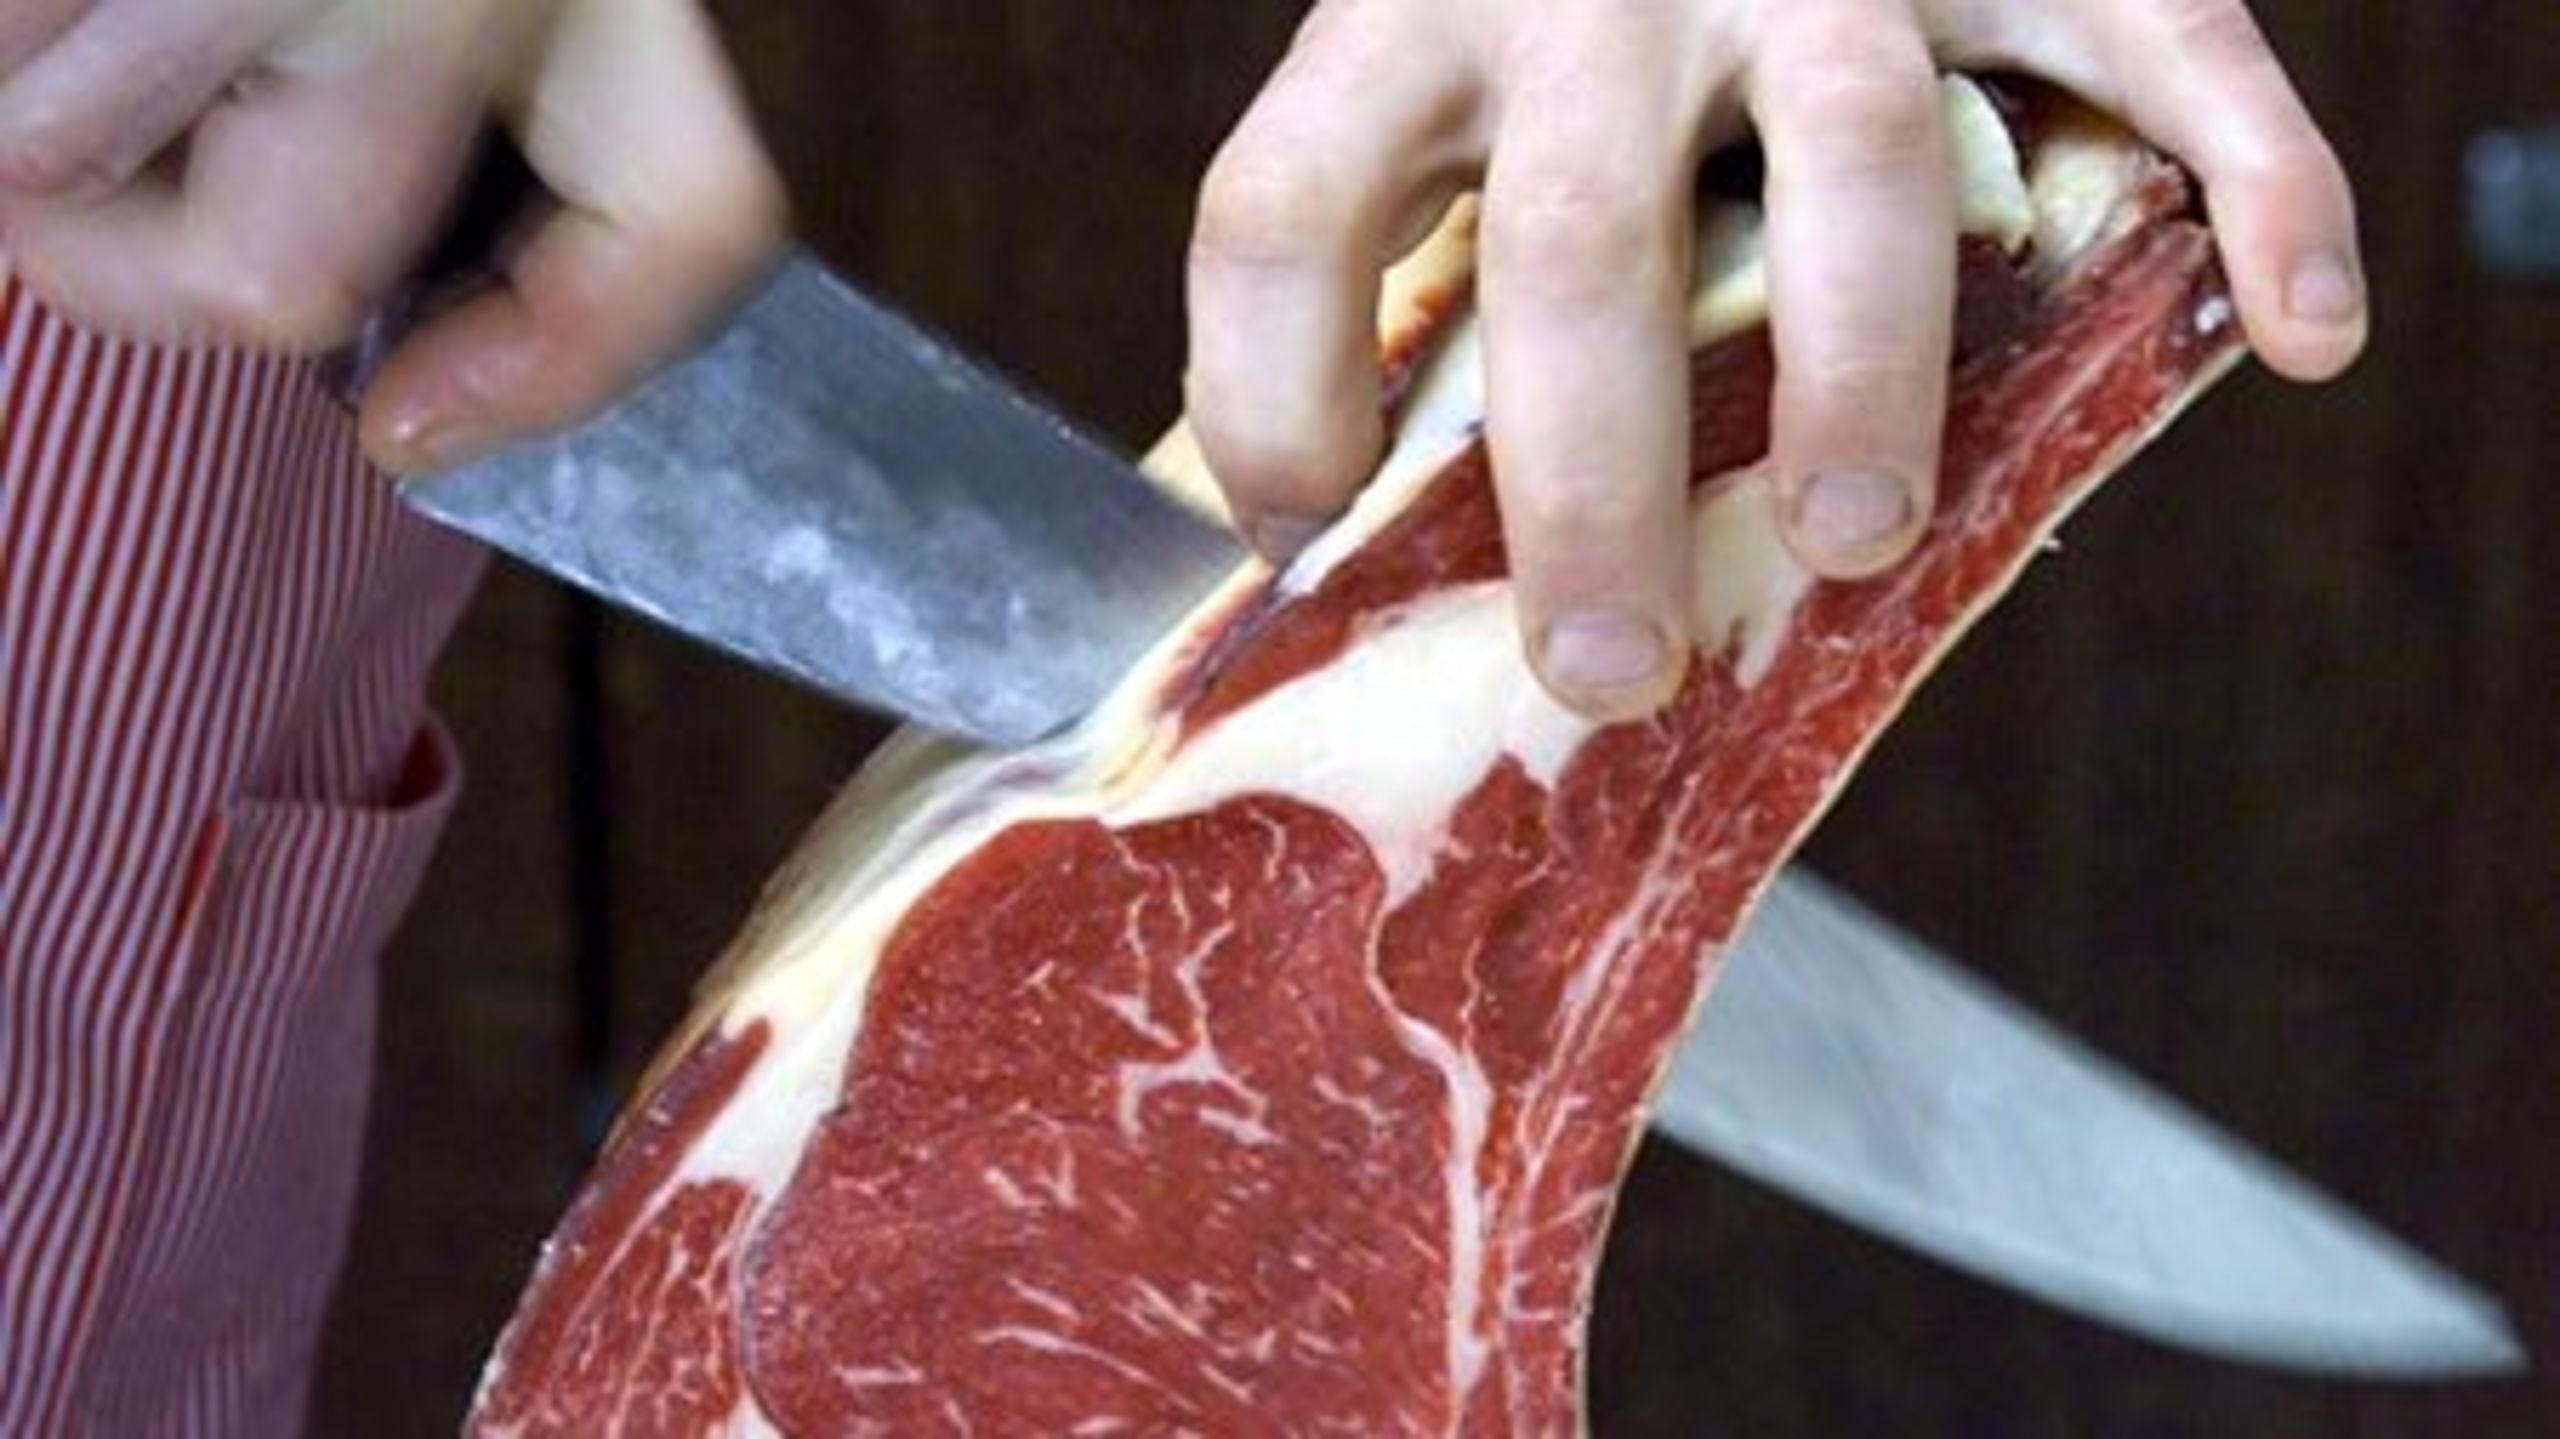 Det Etiske Råd anbefaler nu officielt at indføre en klimaafgift på oksekød.